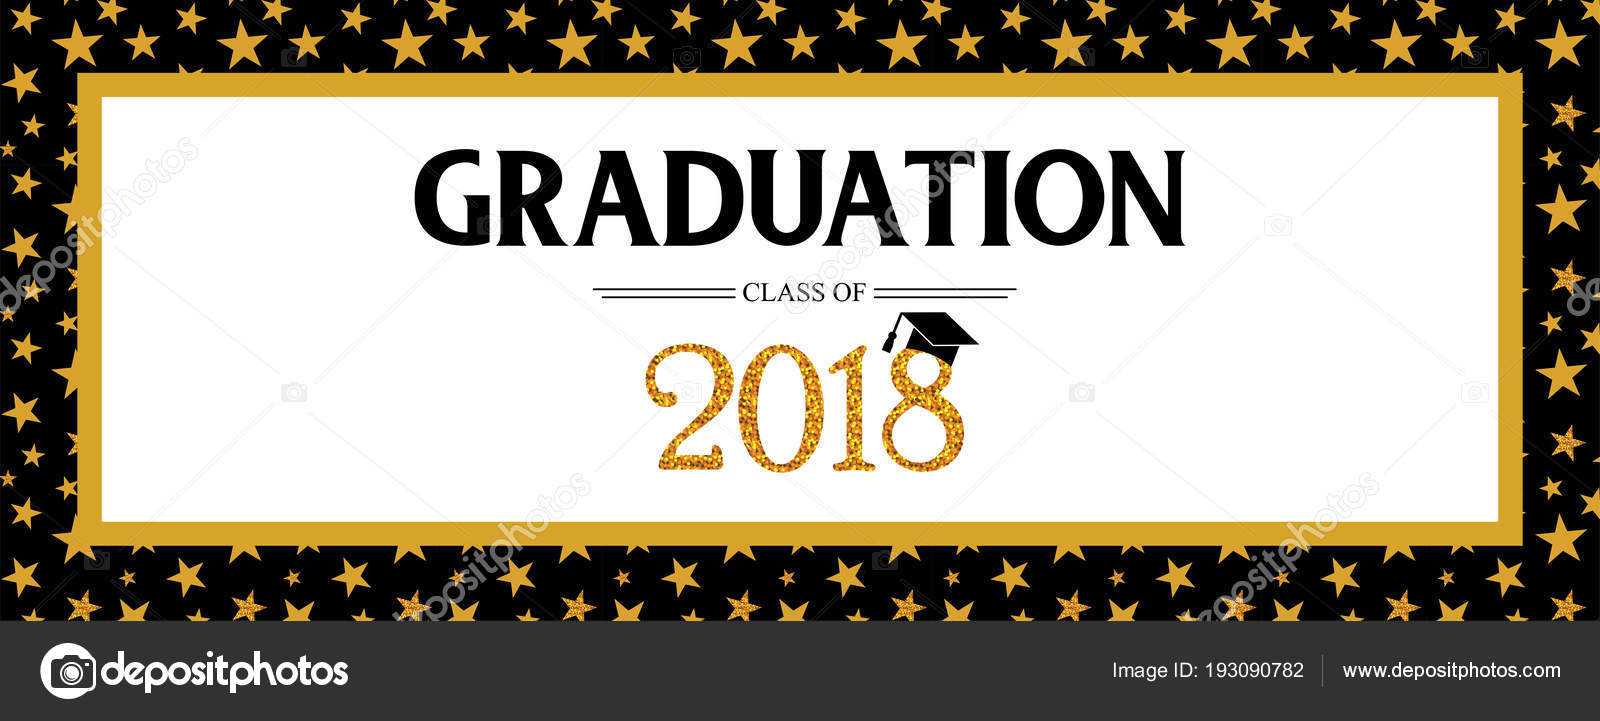 Graduation Banner Template | Graduation Class Of 2018 Intended For Graduation Banner Template